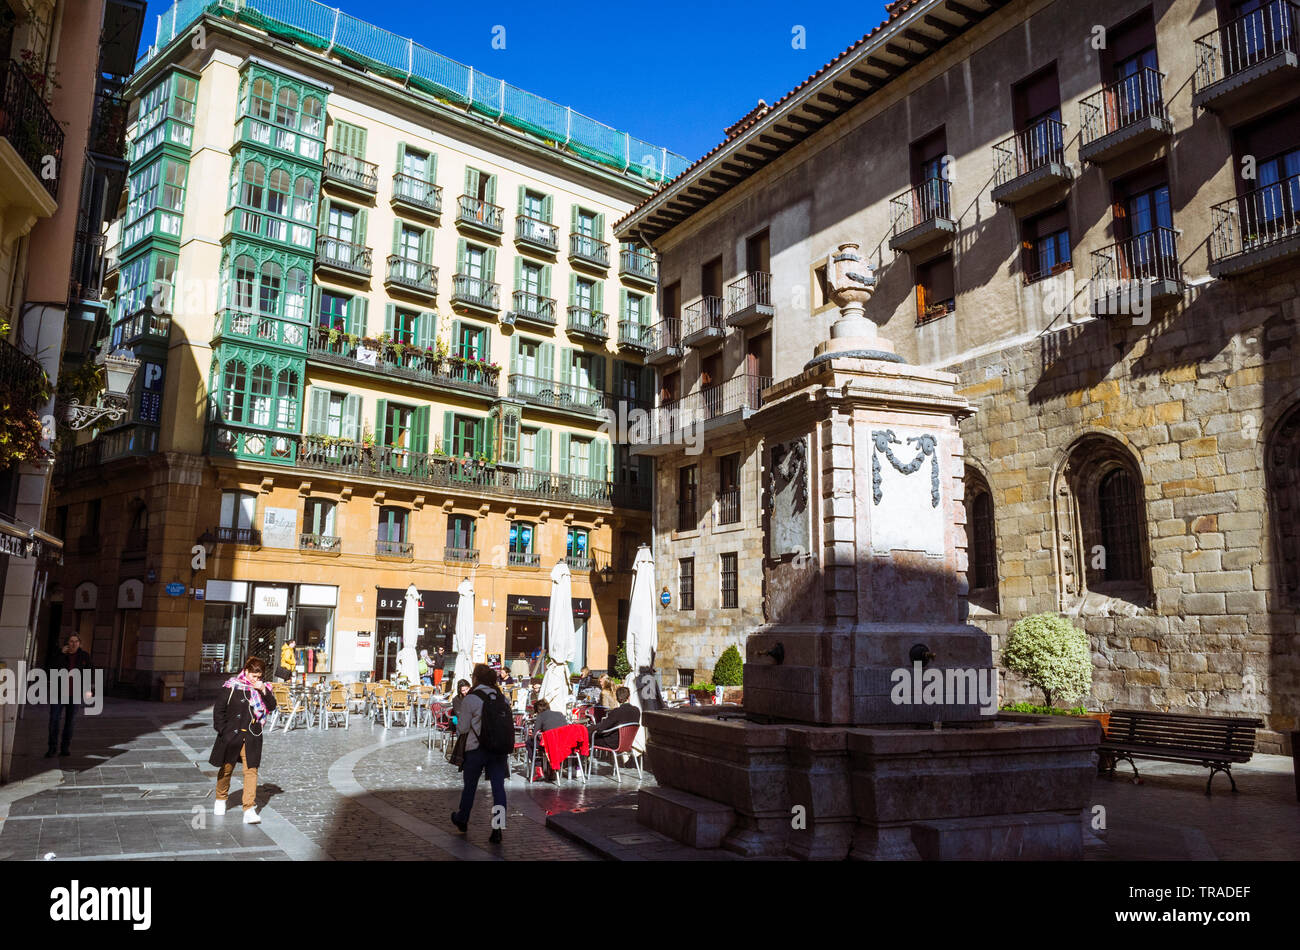 Bilbao, Vizcaya, Baskenland, Spanien: Die Menschen sitzen an Sidewalk Cafe auf dem kleinen Platz von Santiago in der Siete Calles (Sieben Straßen) oder Casco Viejo Stockfoto